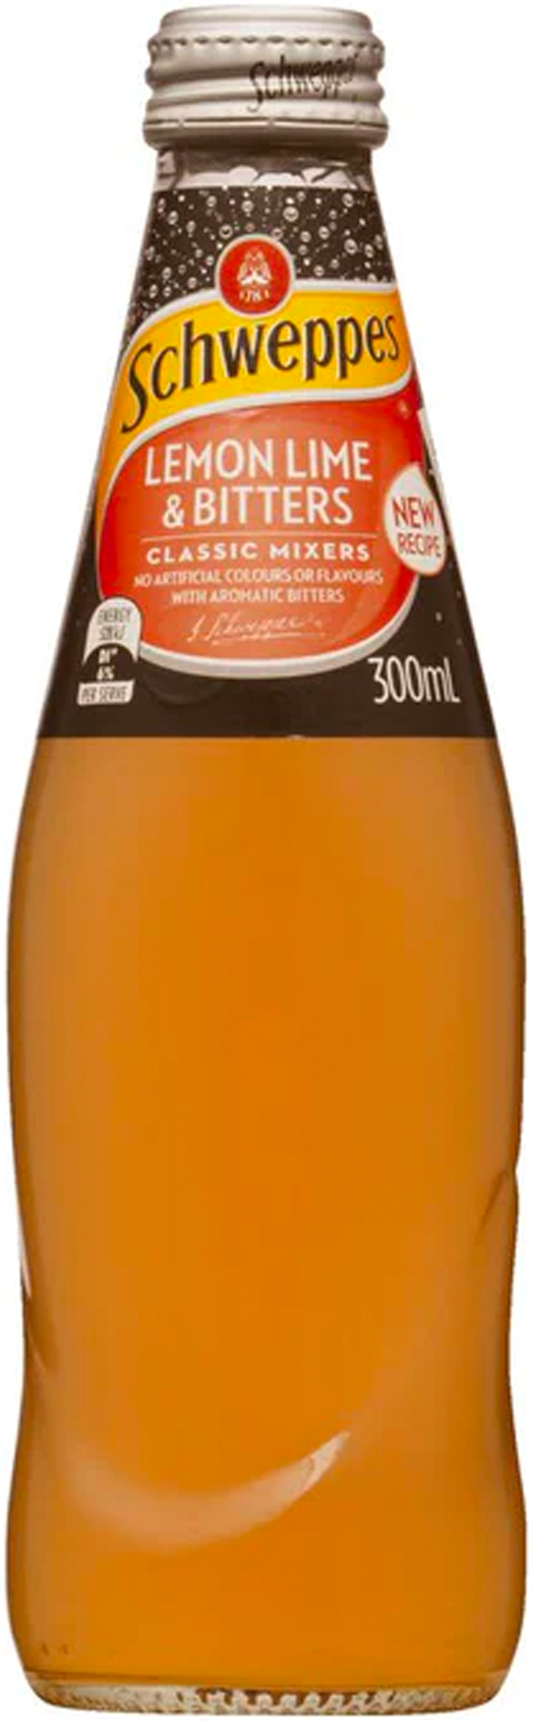 Schweppes Lemon Lime & Bitters Glass Bottle 300ml